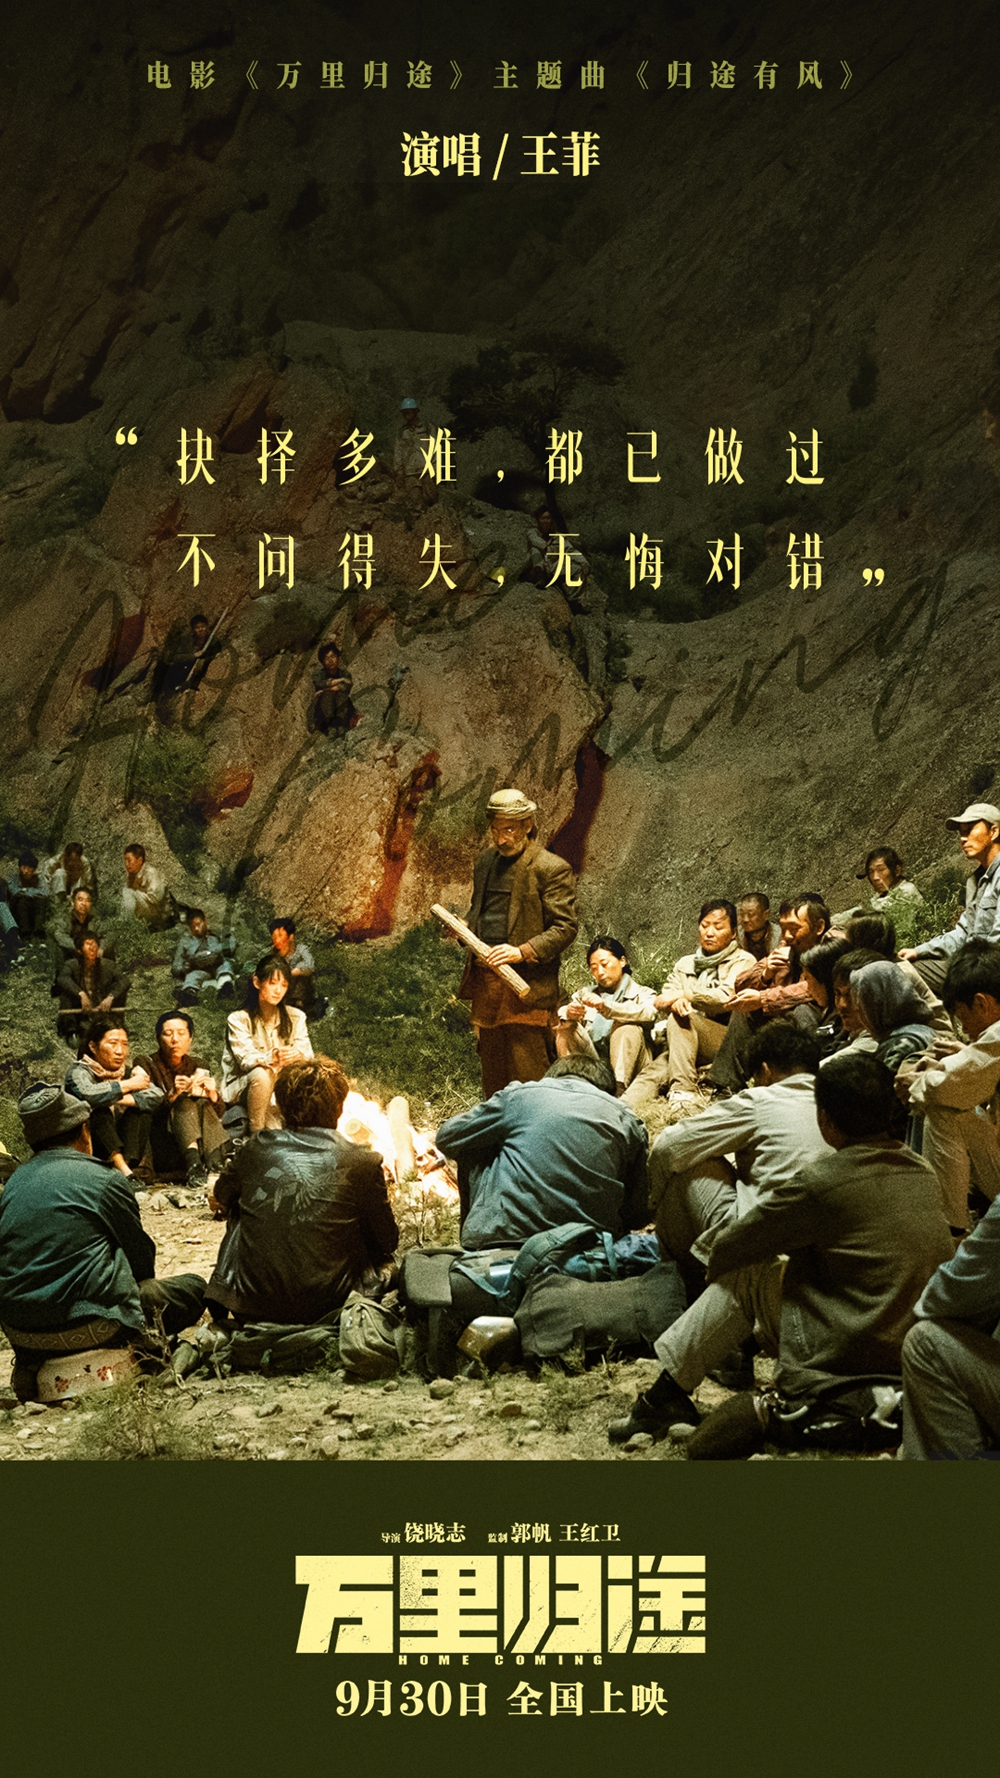 王菲献唱国庆档电影《万里归途》主题曲《归途有风》 歌声诠释外交官撤侨的信念与心声